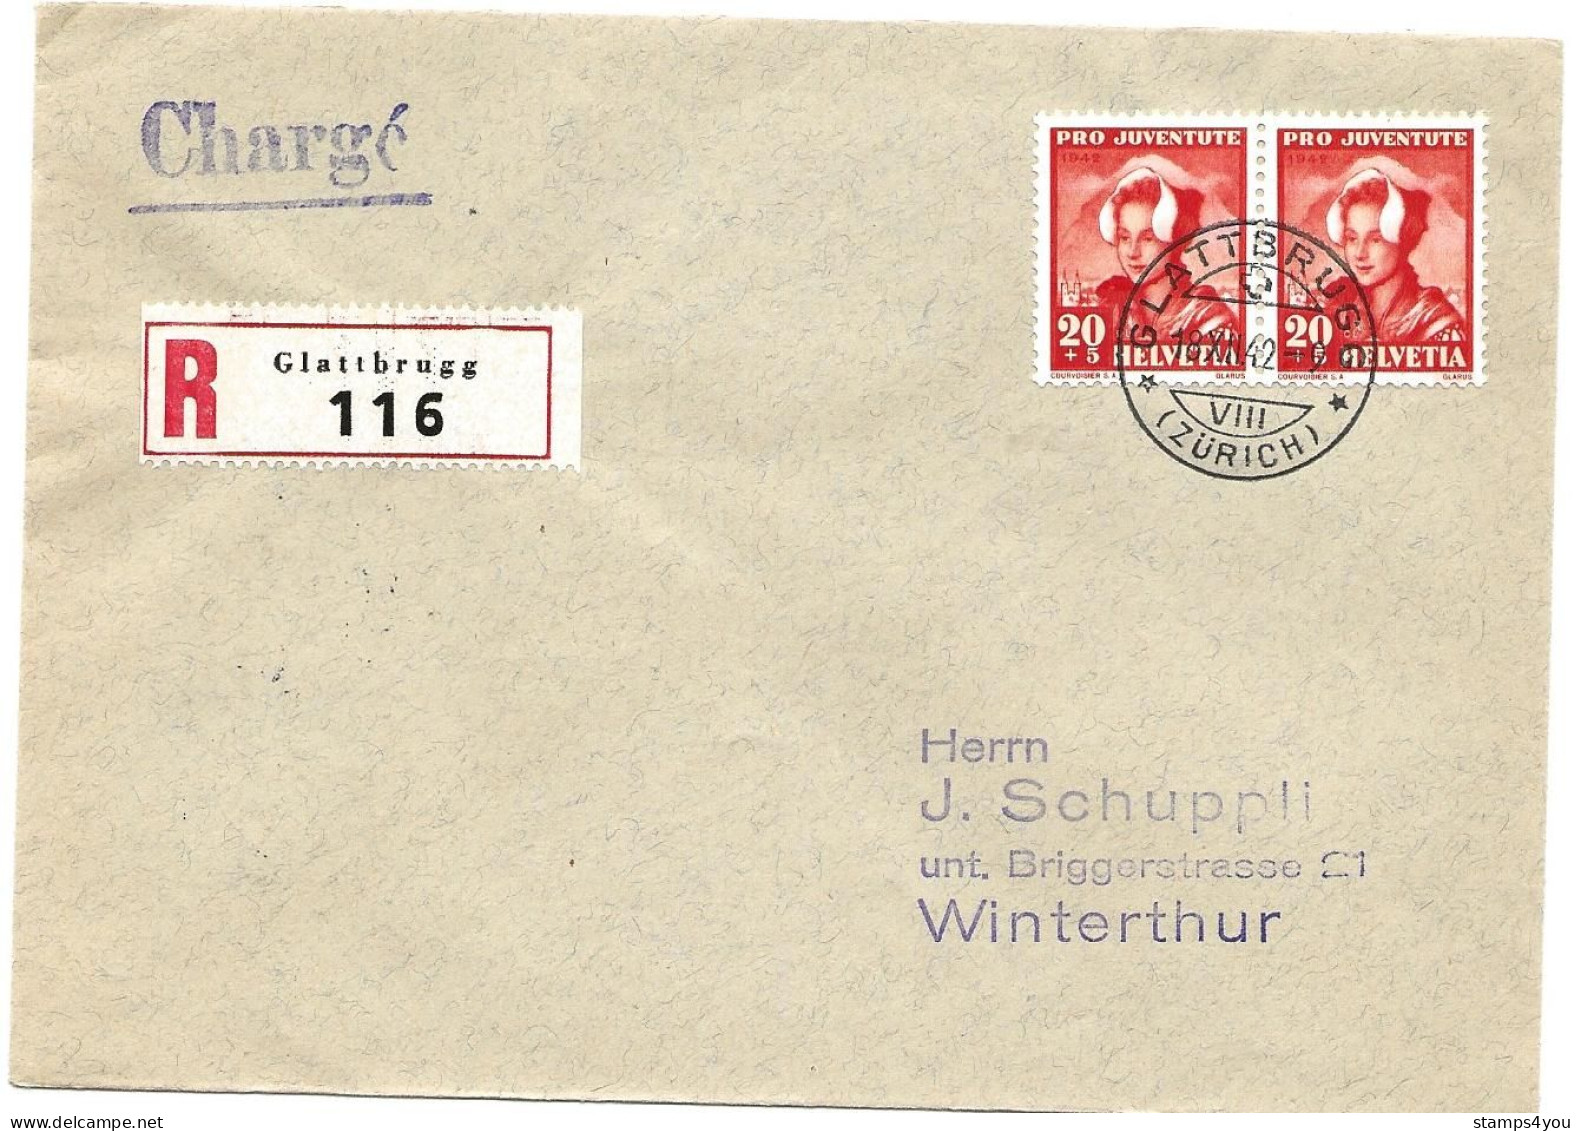 33 - 79 - Enveloppe Recommandée Envoyée De Glattbrugg 1942 - Timbres Pro Juventute - Storia Postale